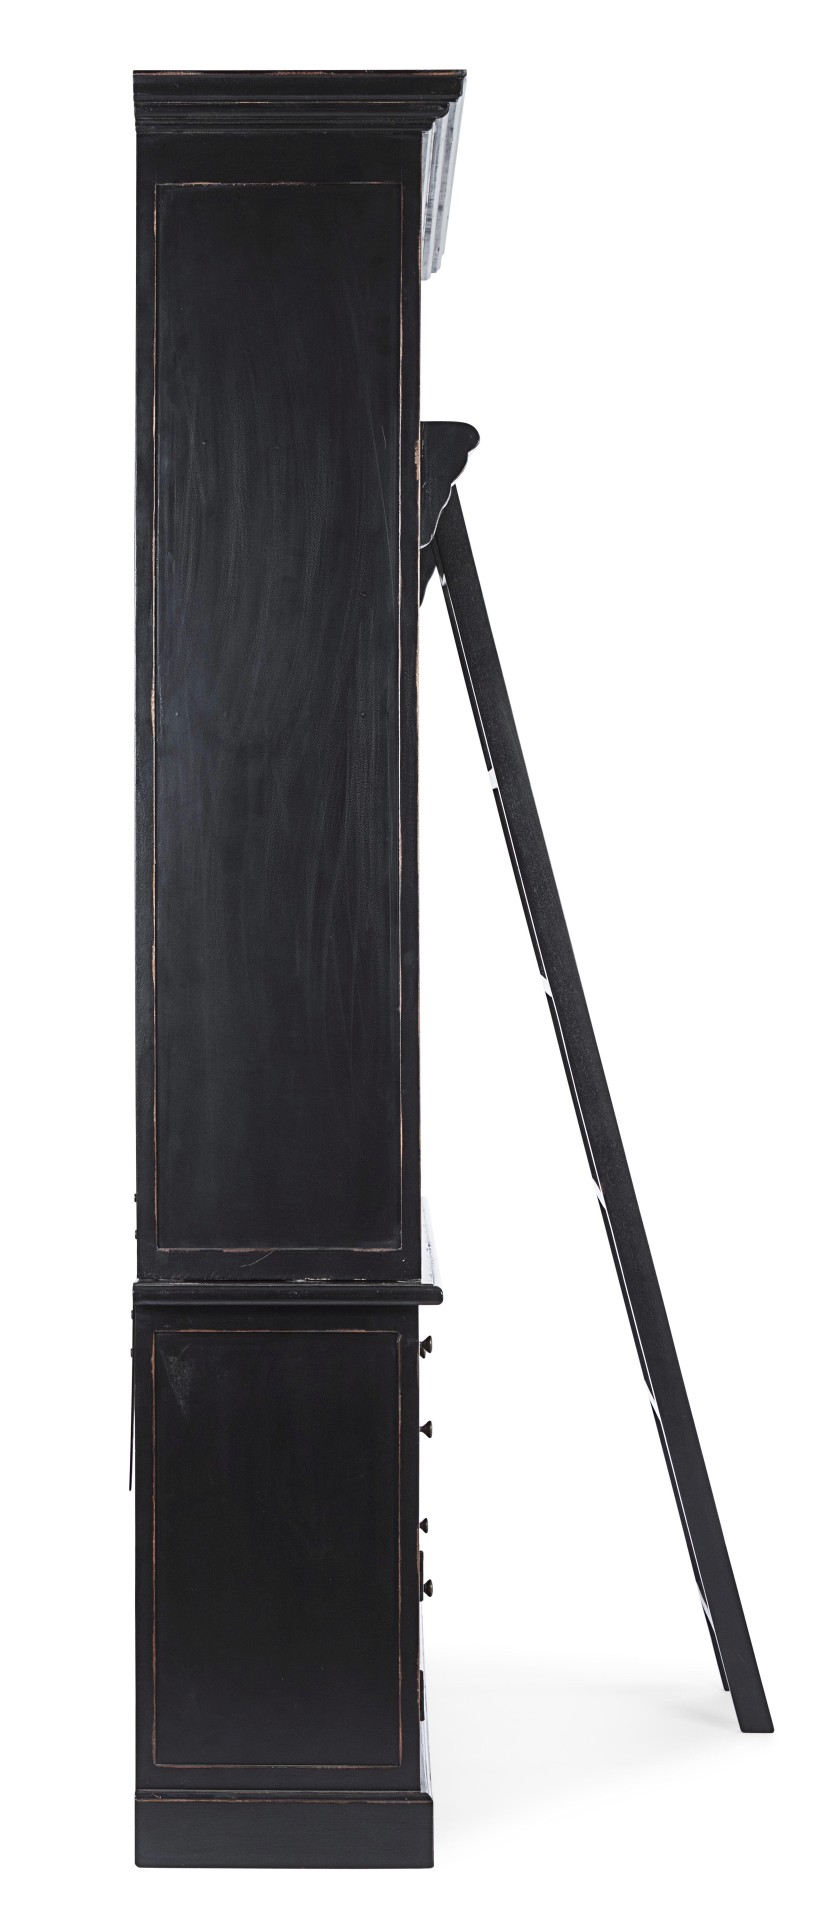 Der Bücherschrank Jefferson überzeugt mit seinem klassischen Design. Gefertigt wurde er aus Mangoholz, welches einen schwarzen Farbton besitzt. Das Gestell ist auch aus Mangoholz. Der Schrank verfügt über drei Türen und vier Schubladen. Die Breite beträgt